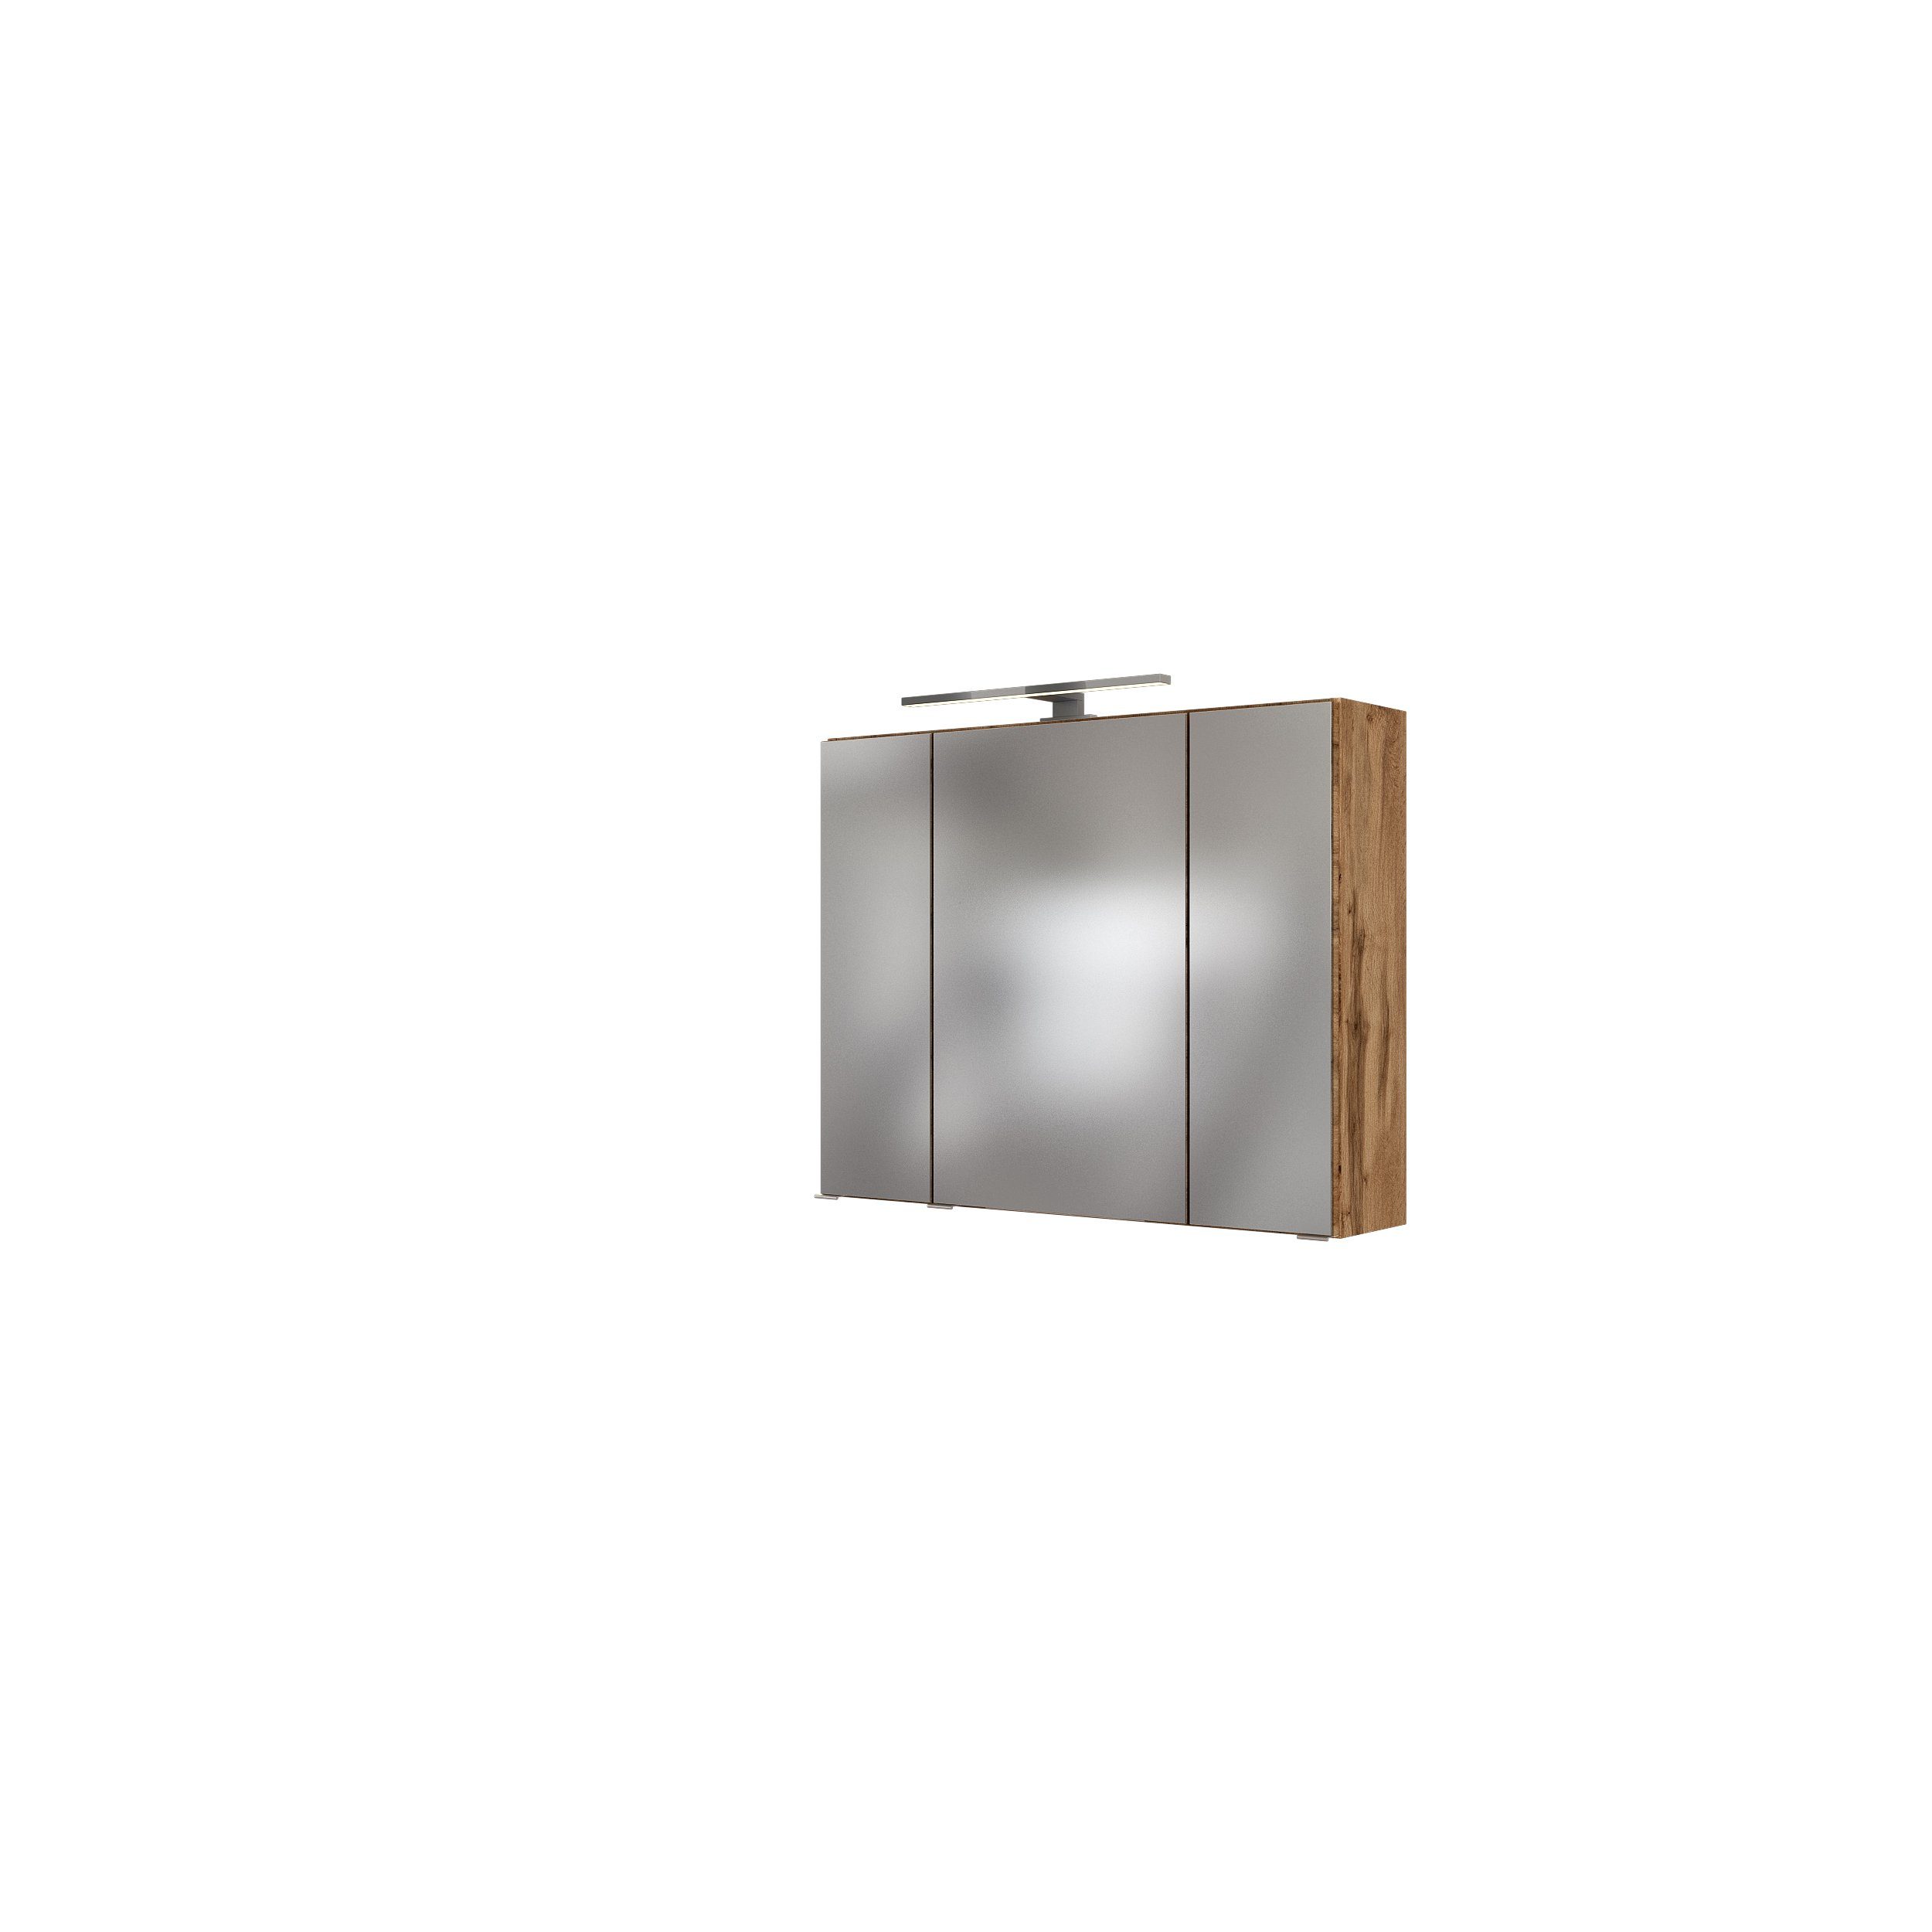 möbelando Spiegelschrank Oulu Moderner Spiegelschrank, Korpus aus melaminharzbeschichteter Spanplatte in Wotaneiche mit 3 Spiegeltüren und 6 Glaseinlegeböden, inkl. 1 LED-Aufbauleuchte, Trafobox, Schalter und Steckdose. Breite 80 cm, Höhe 64 cm, Tiefe 20 cm